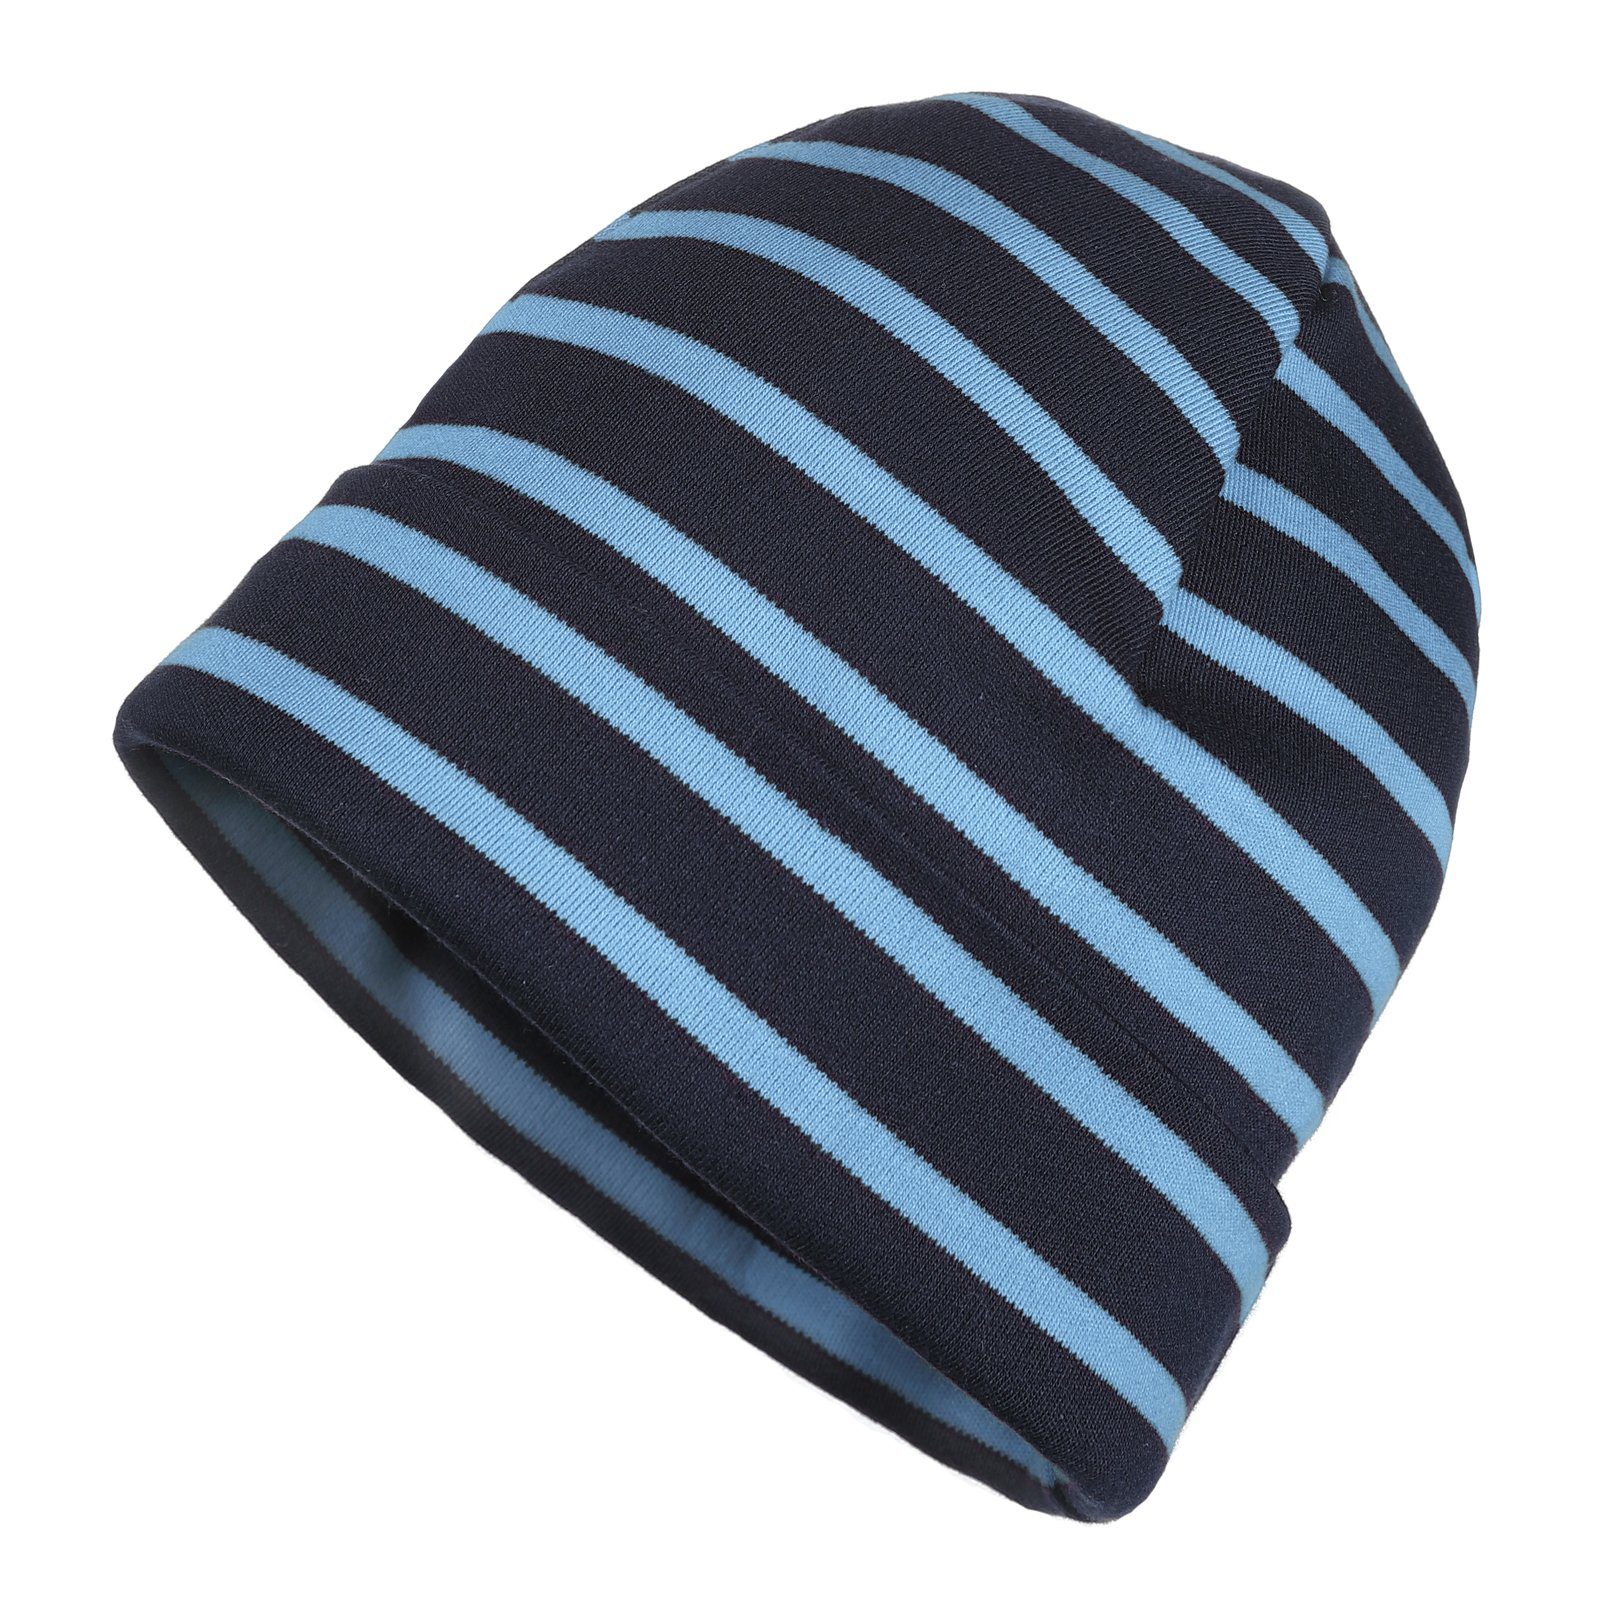 modAS Strickmütze Unisex Mütze Streifen für Kinder & Erwachsene - Ringelmütze Baumwolle (74) blau / azur